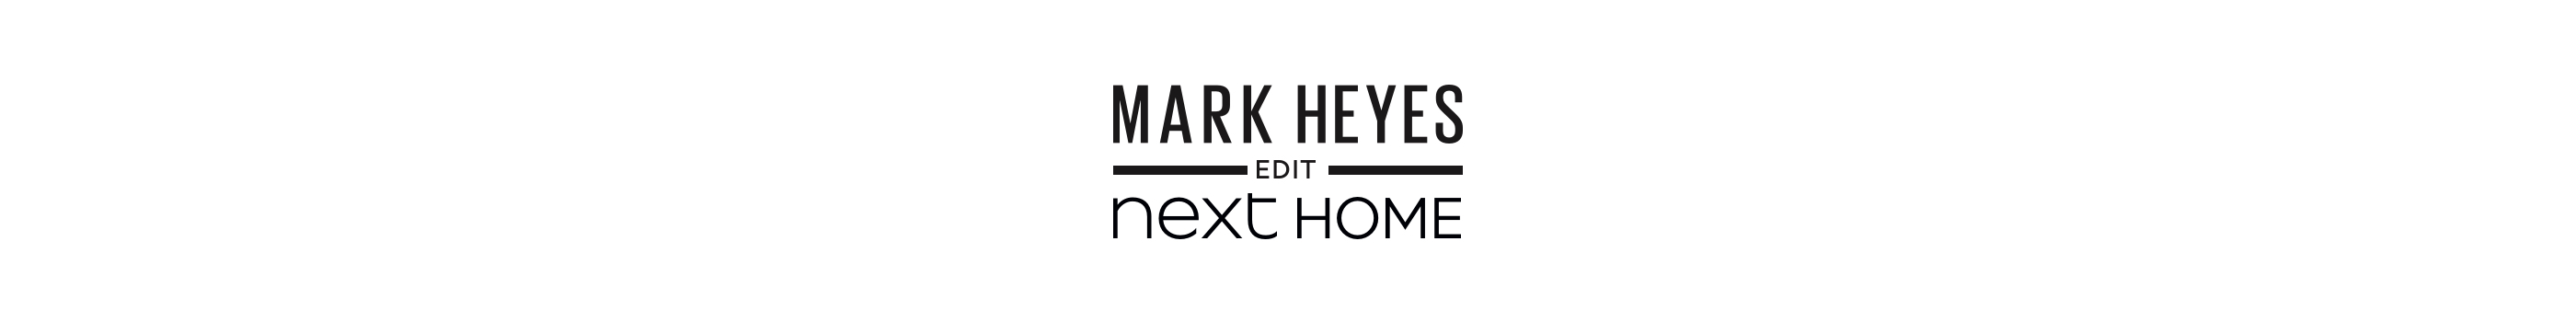 Heyes-logo-dt